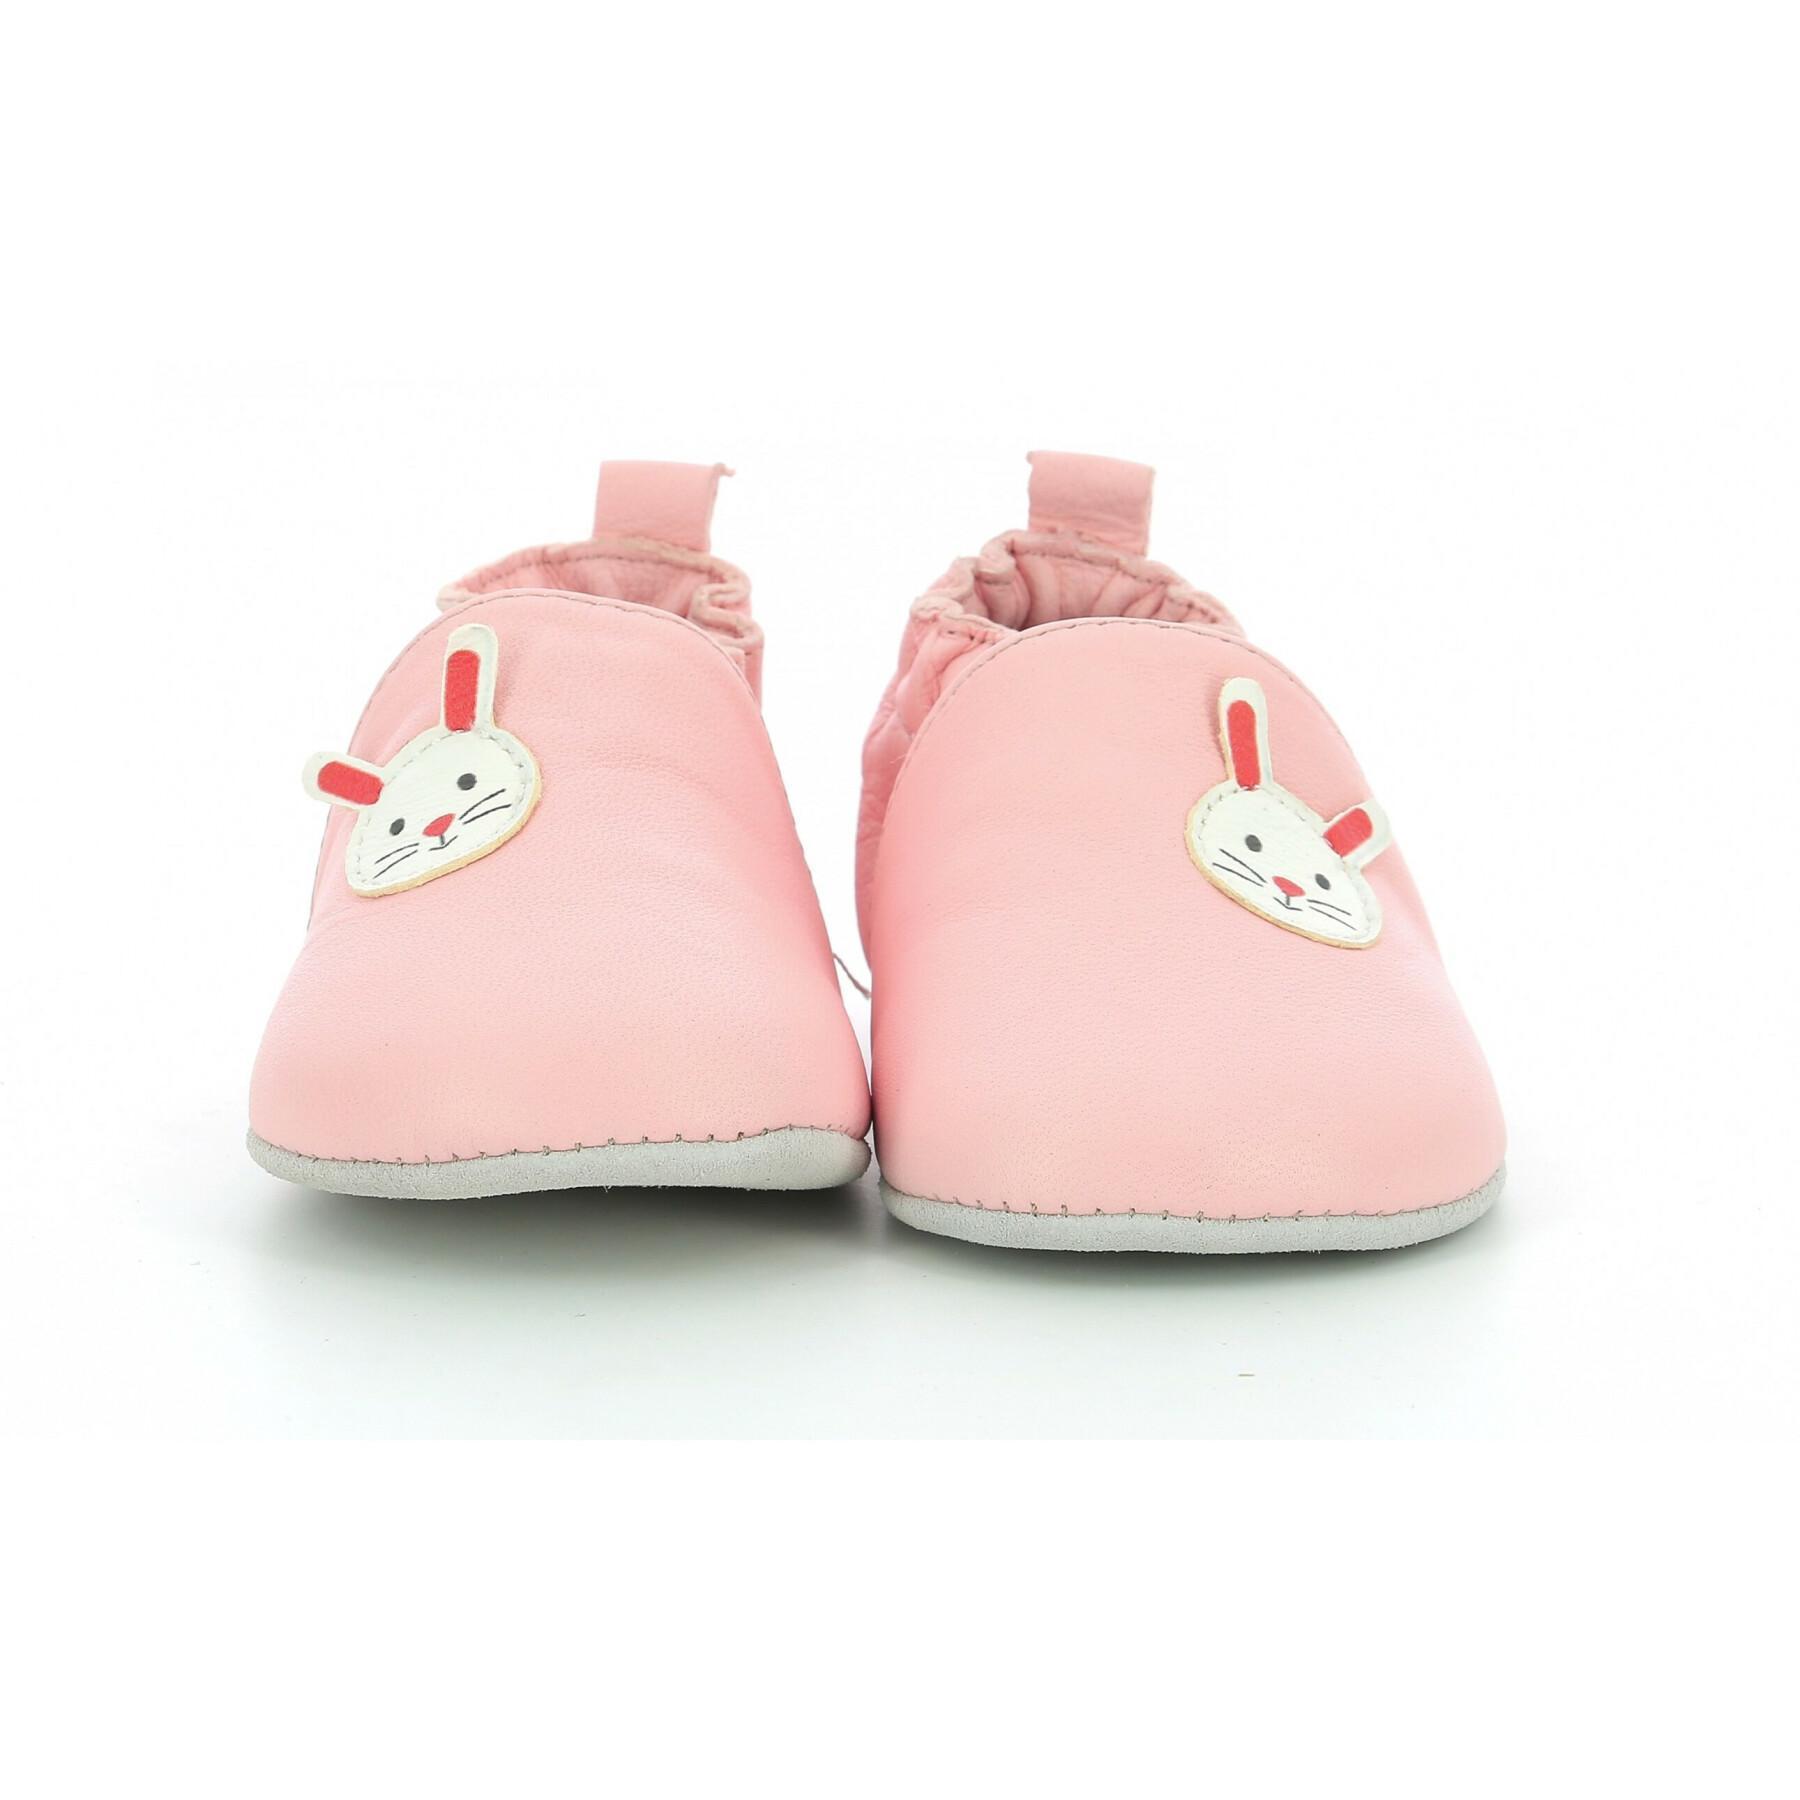 Baby shoes Robeez Mimirabbit